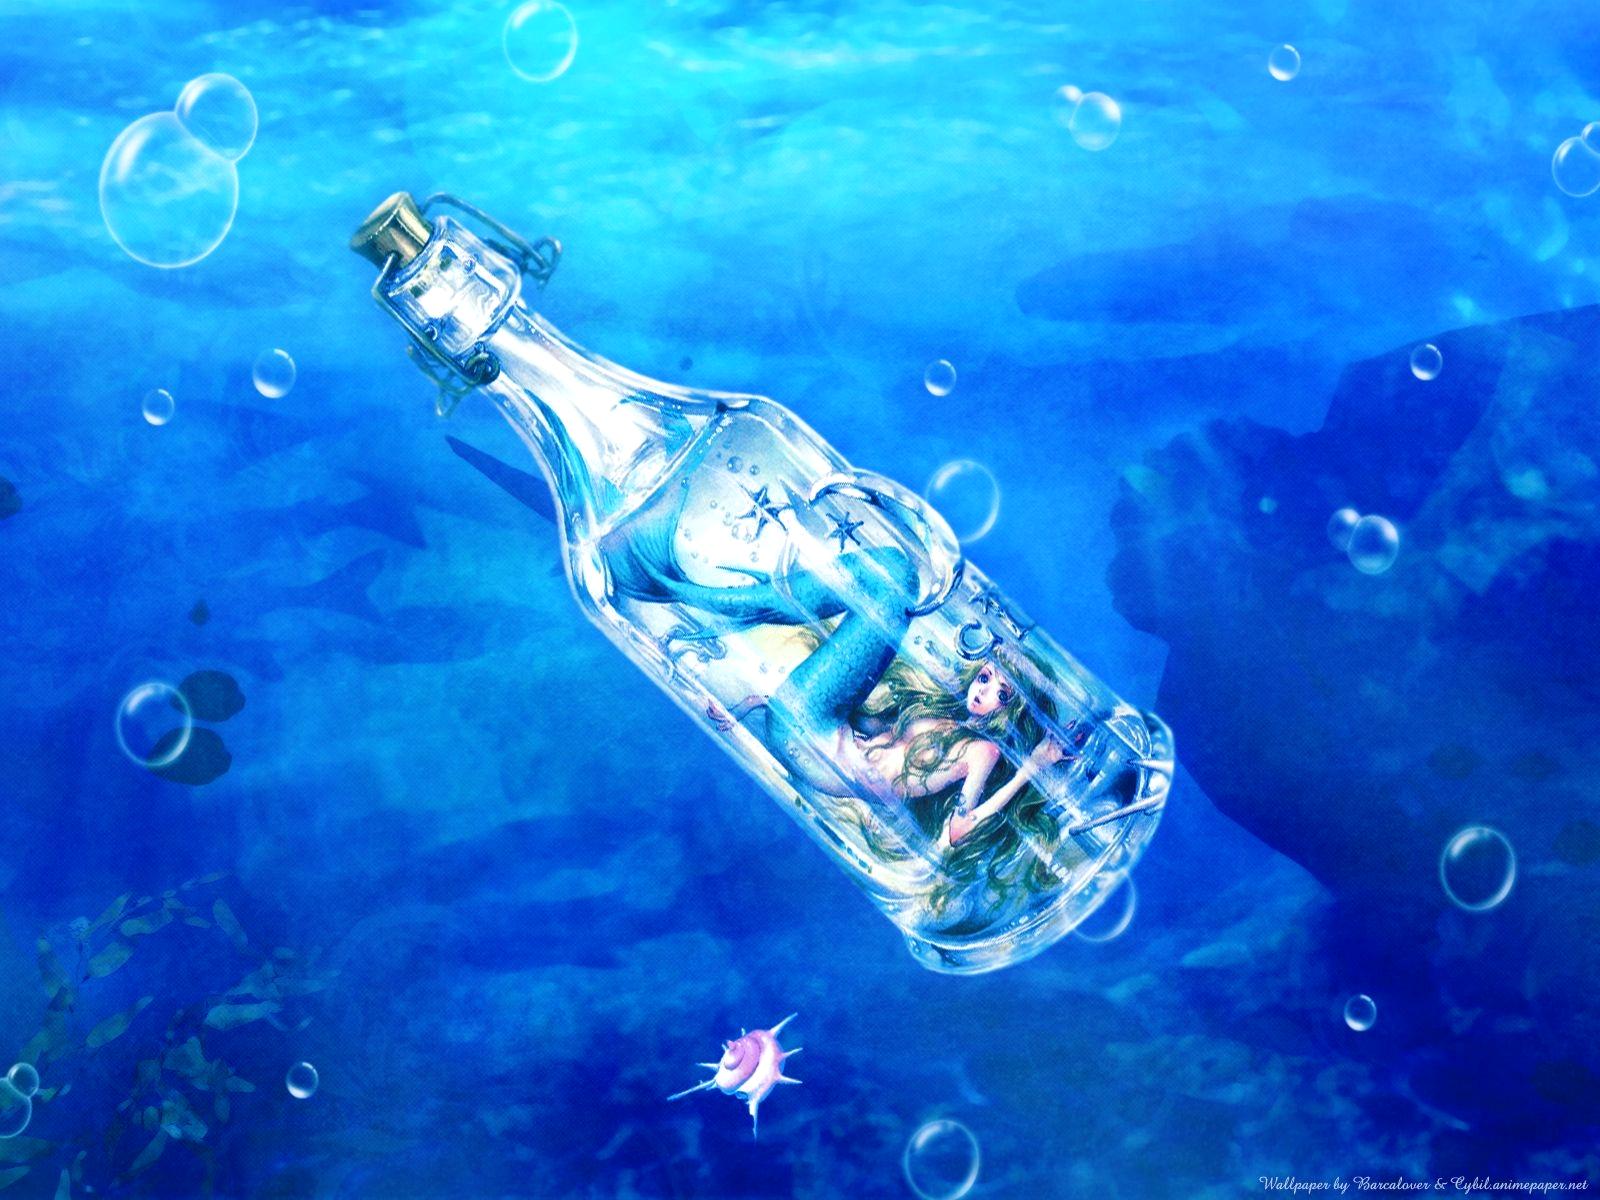 Mermaid Wallpapers  Top 35 Best Mermaid Wallpapers Download